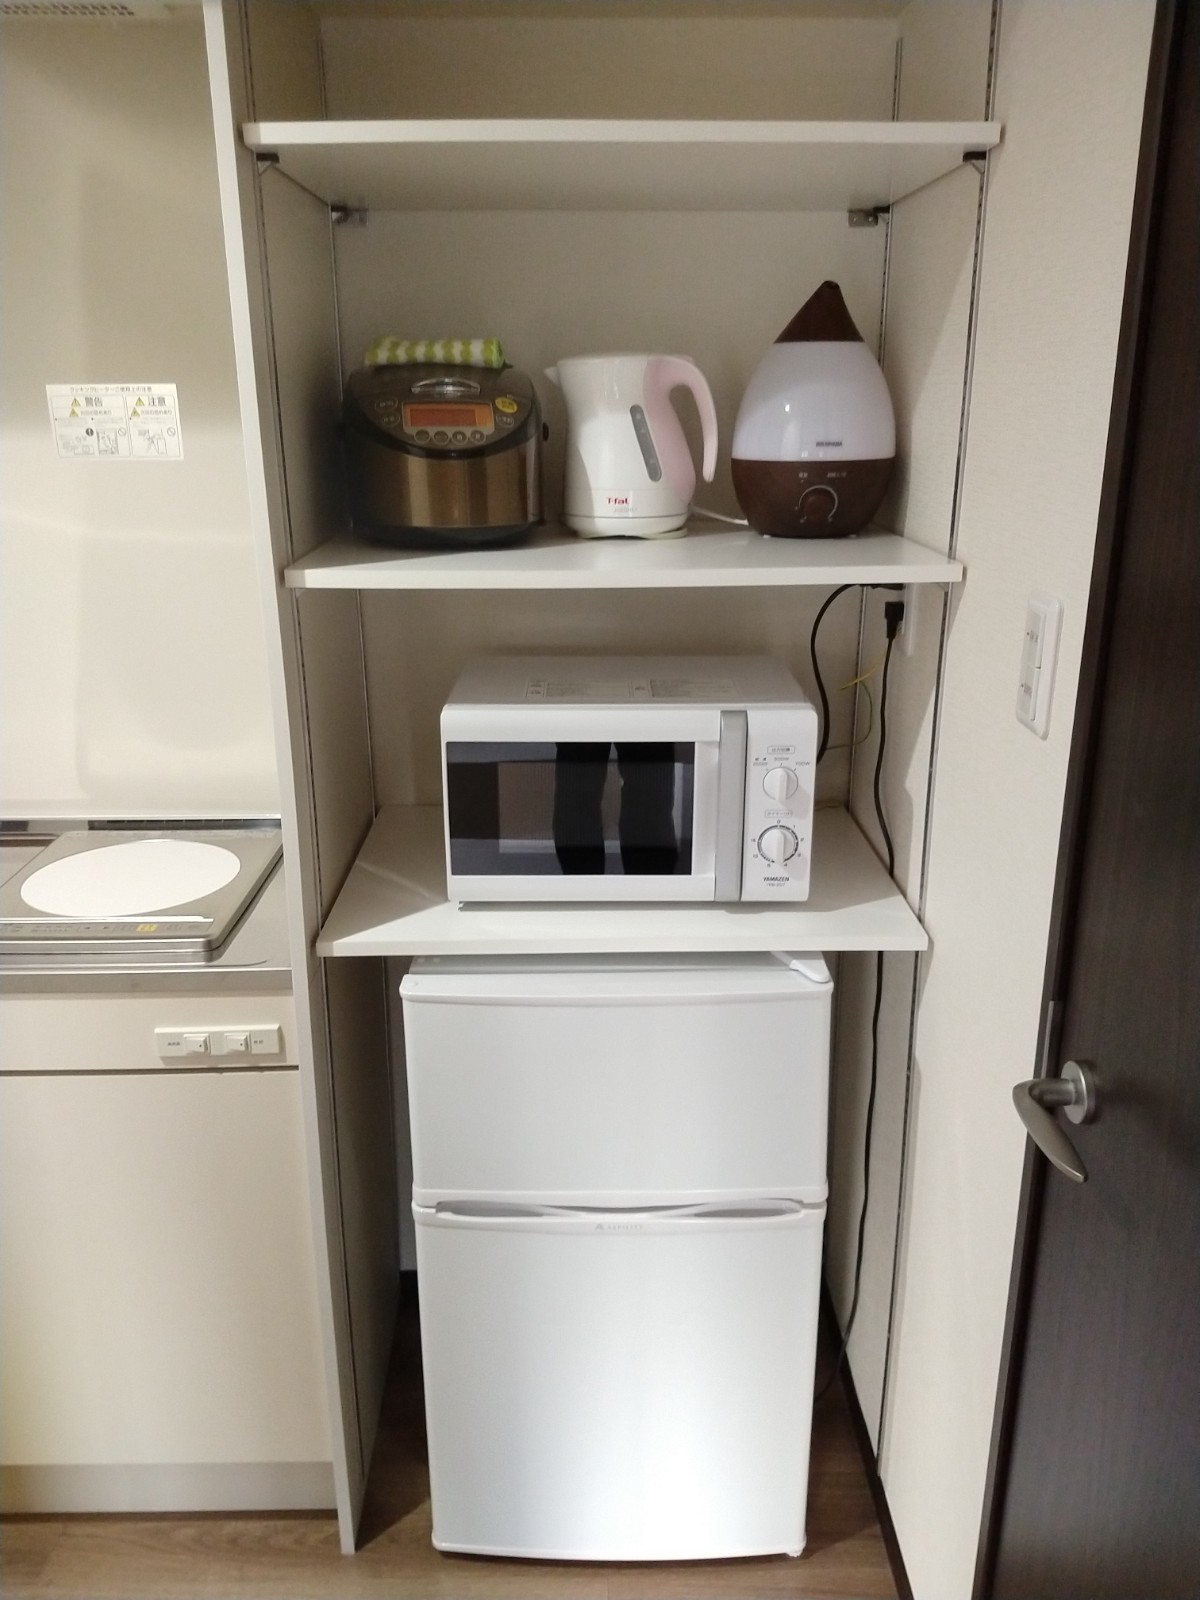 Wタイプ冷蔵庫・電子レンジ・炊飯器・加湿器あります。出前やケータリングも可能。